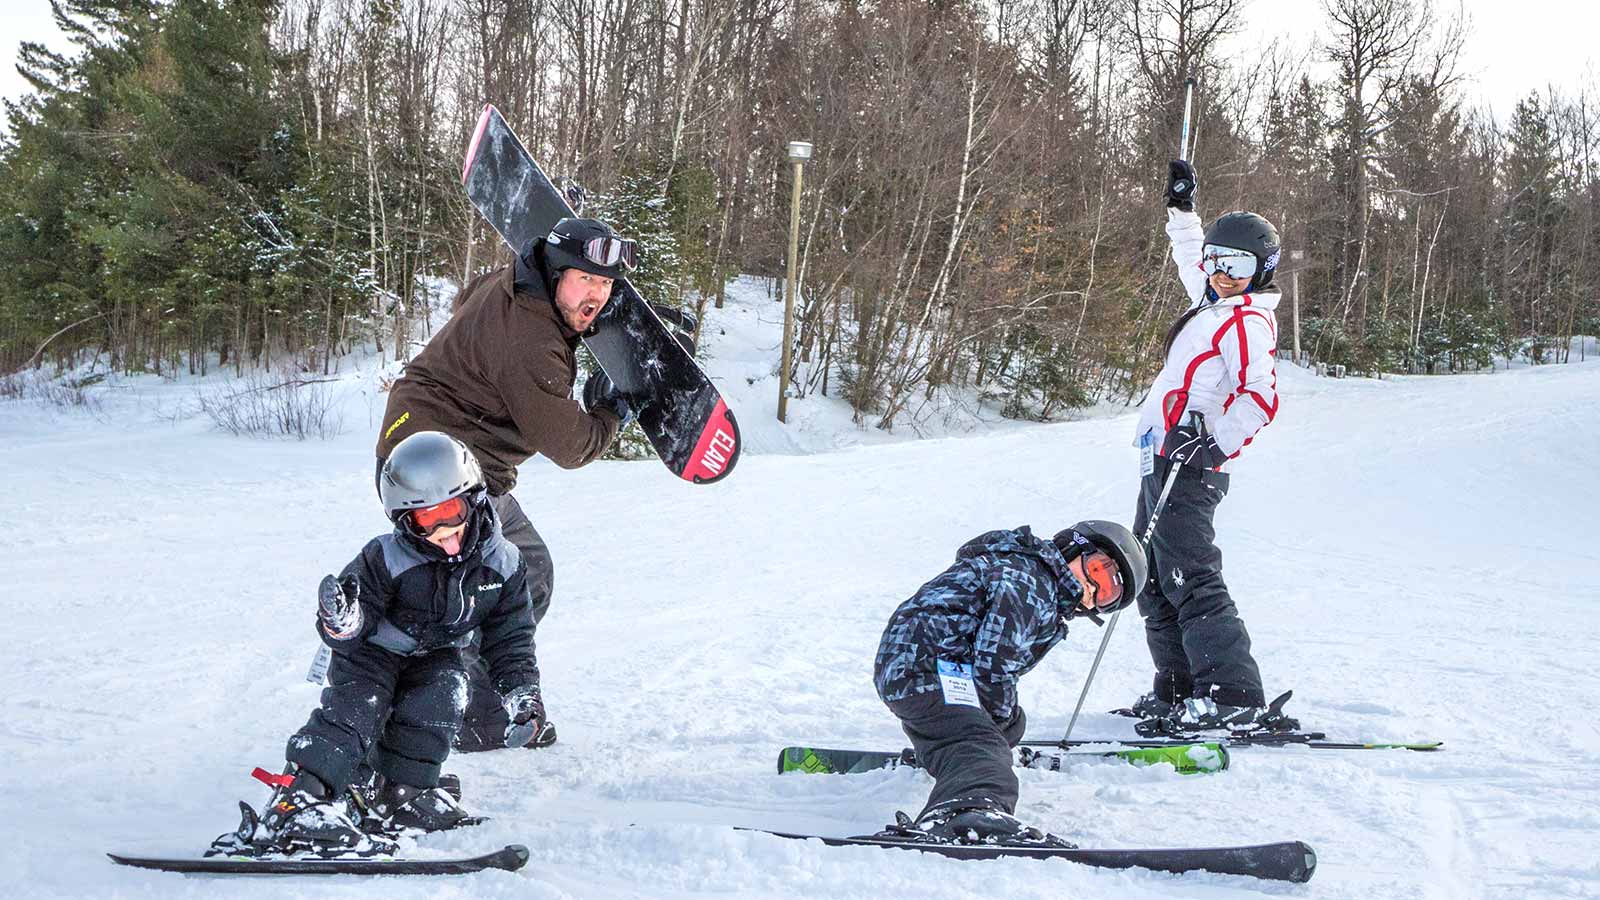 How To Plan A Family Ski Trip